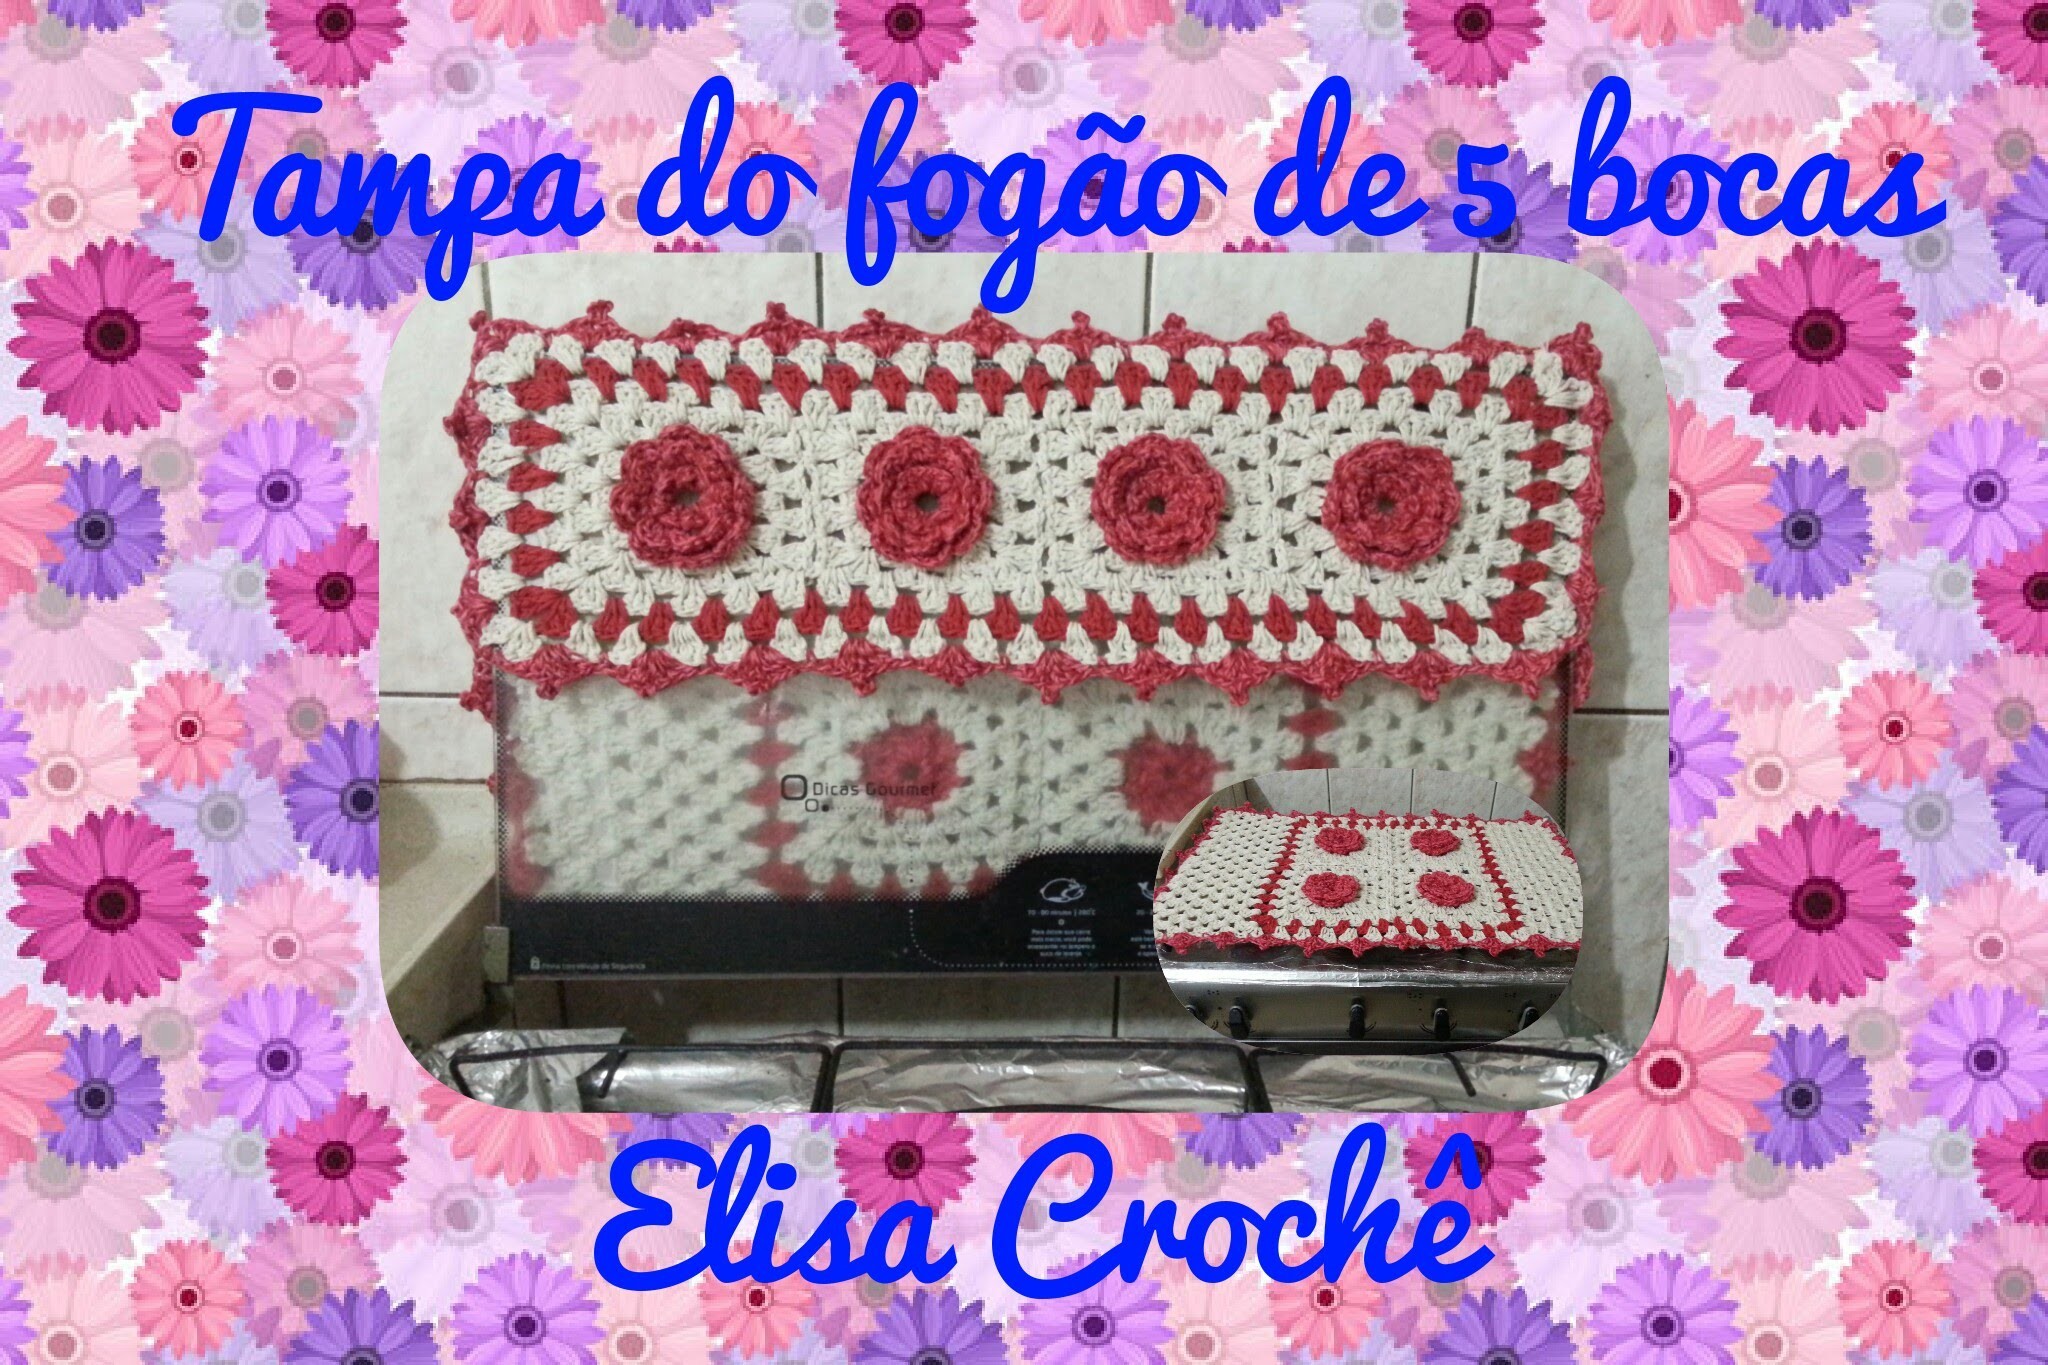 Capa de fogão de 5 bocas em crochê ( 1 parte )# Elisa Crochê